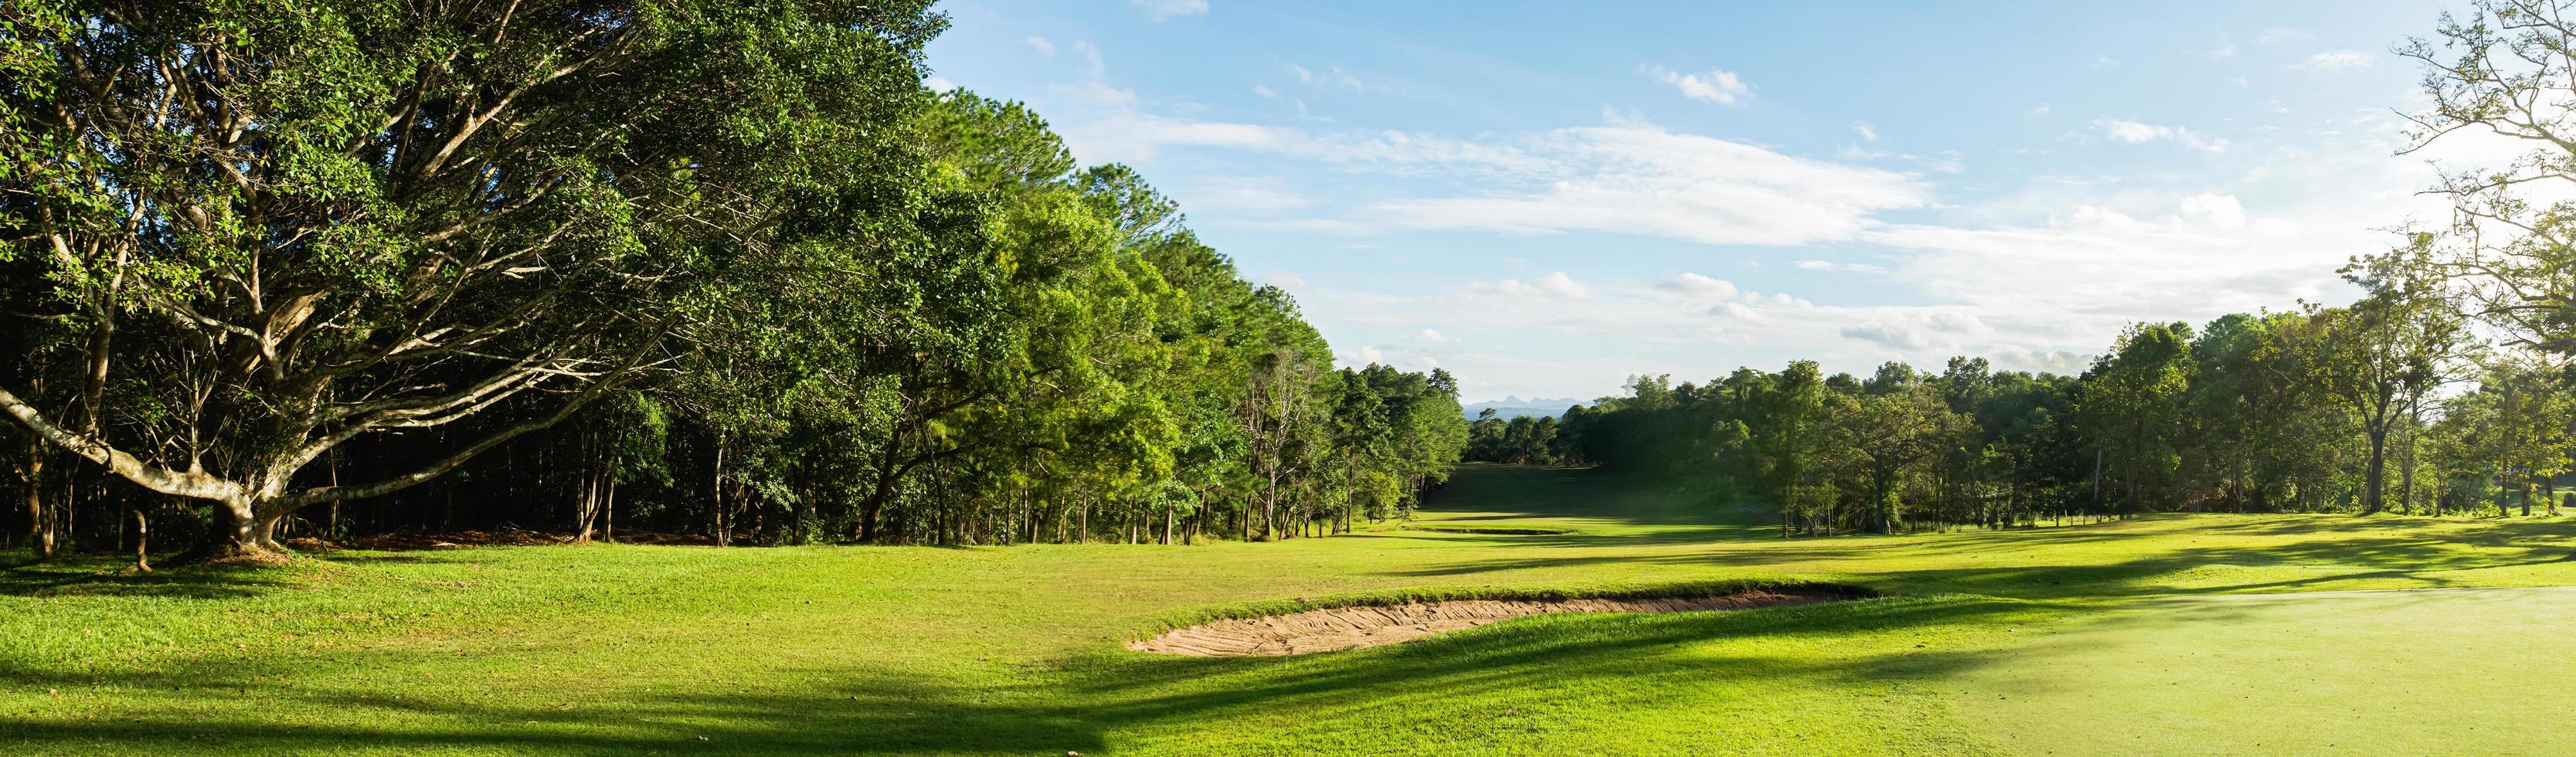 panorama landschap golf crouse met zonlicht foto